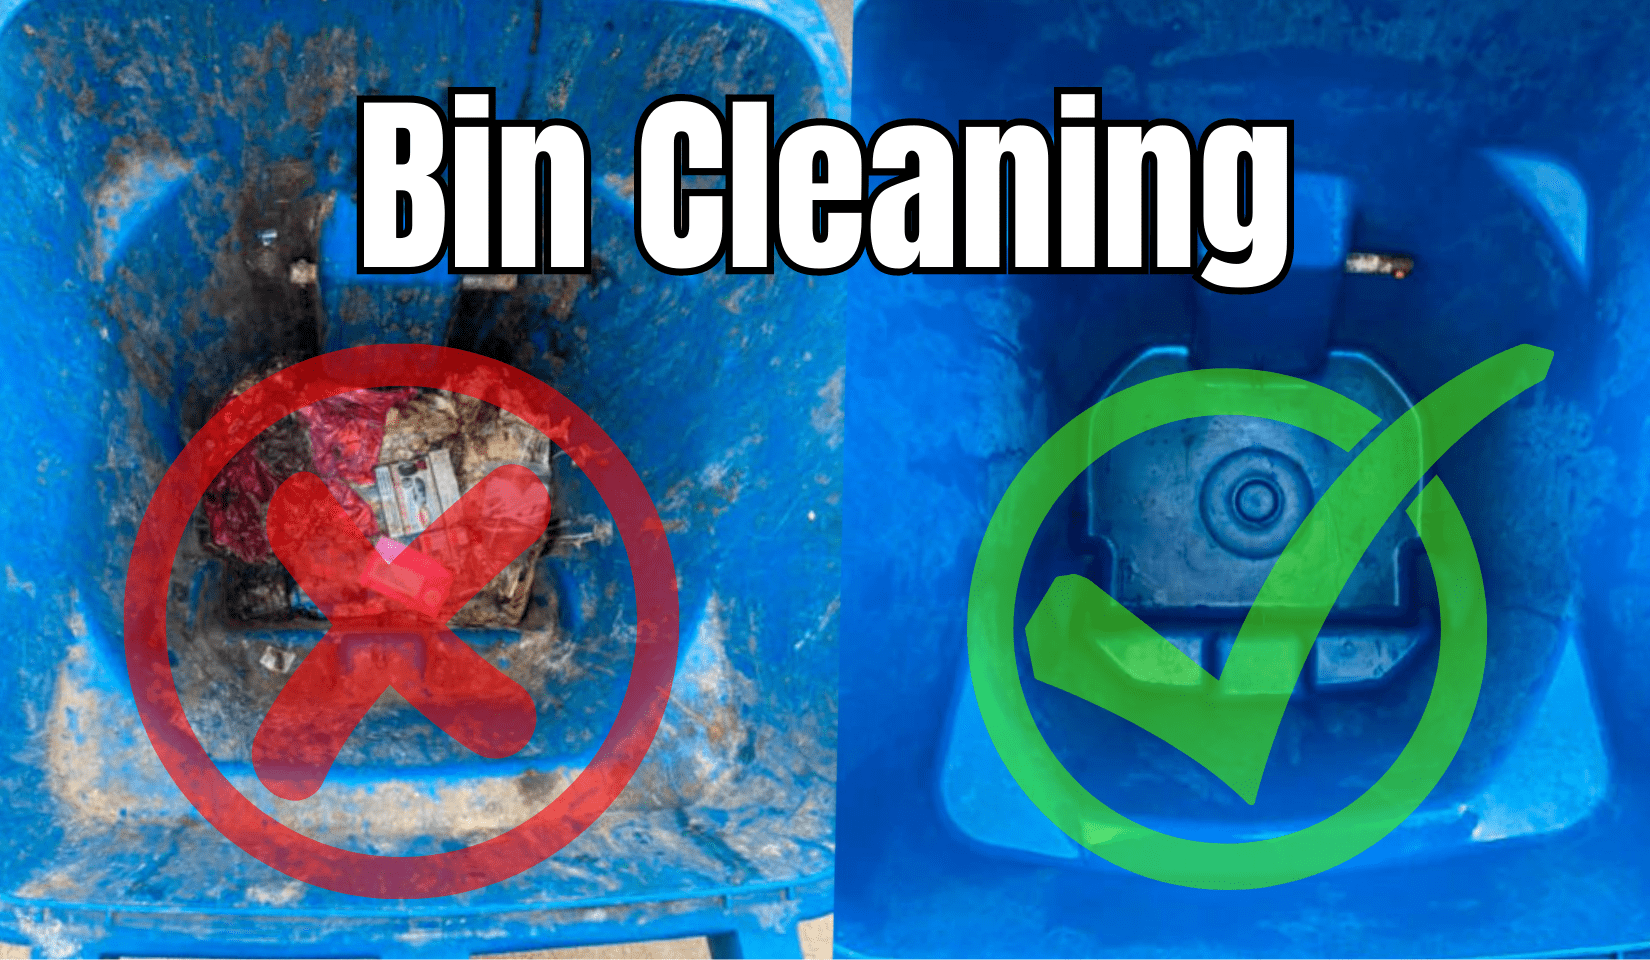 Trash can cleaning
Trash Bin cleaning
Bin cleaning